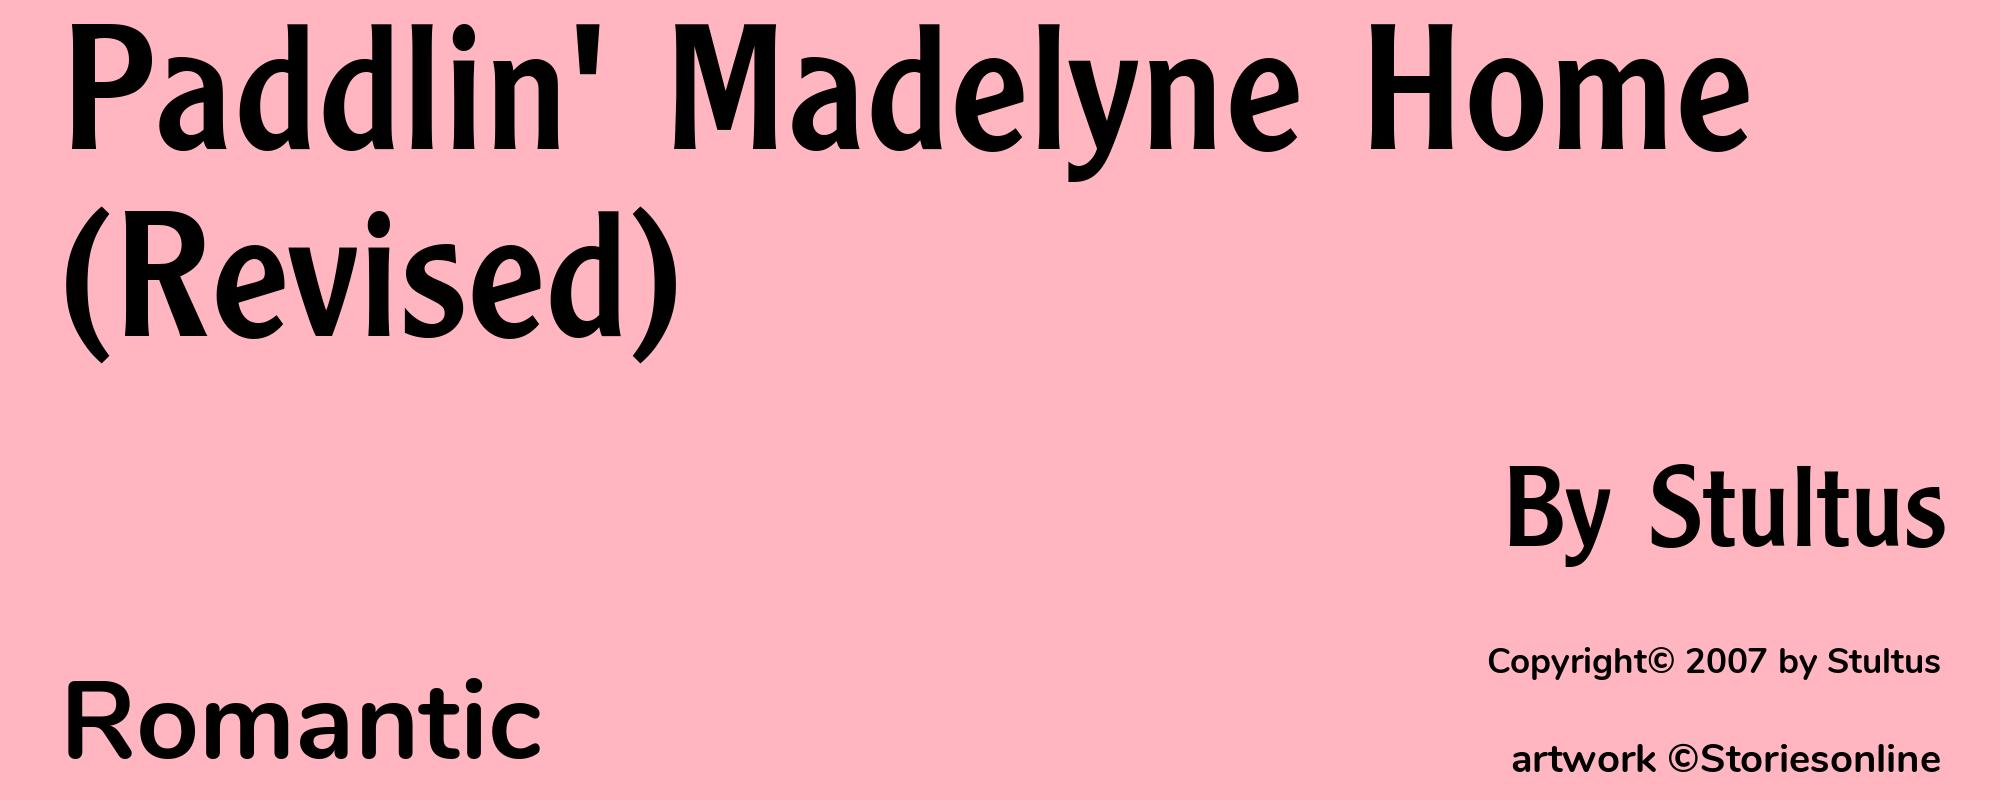 Paddlin' Madelyne Home (Revised) - Cover